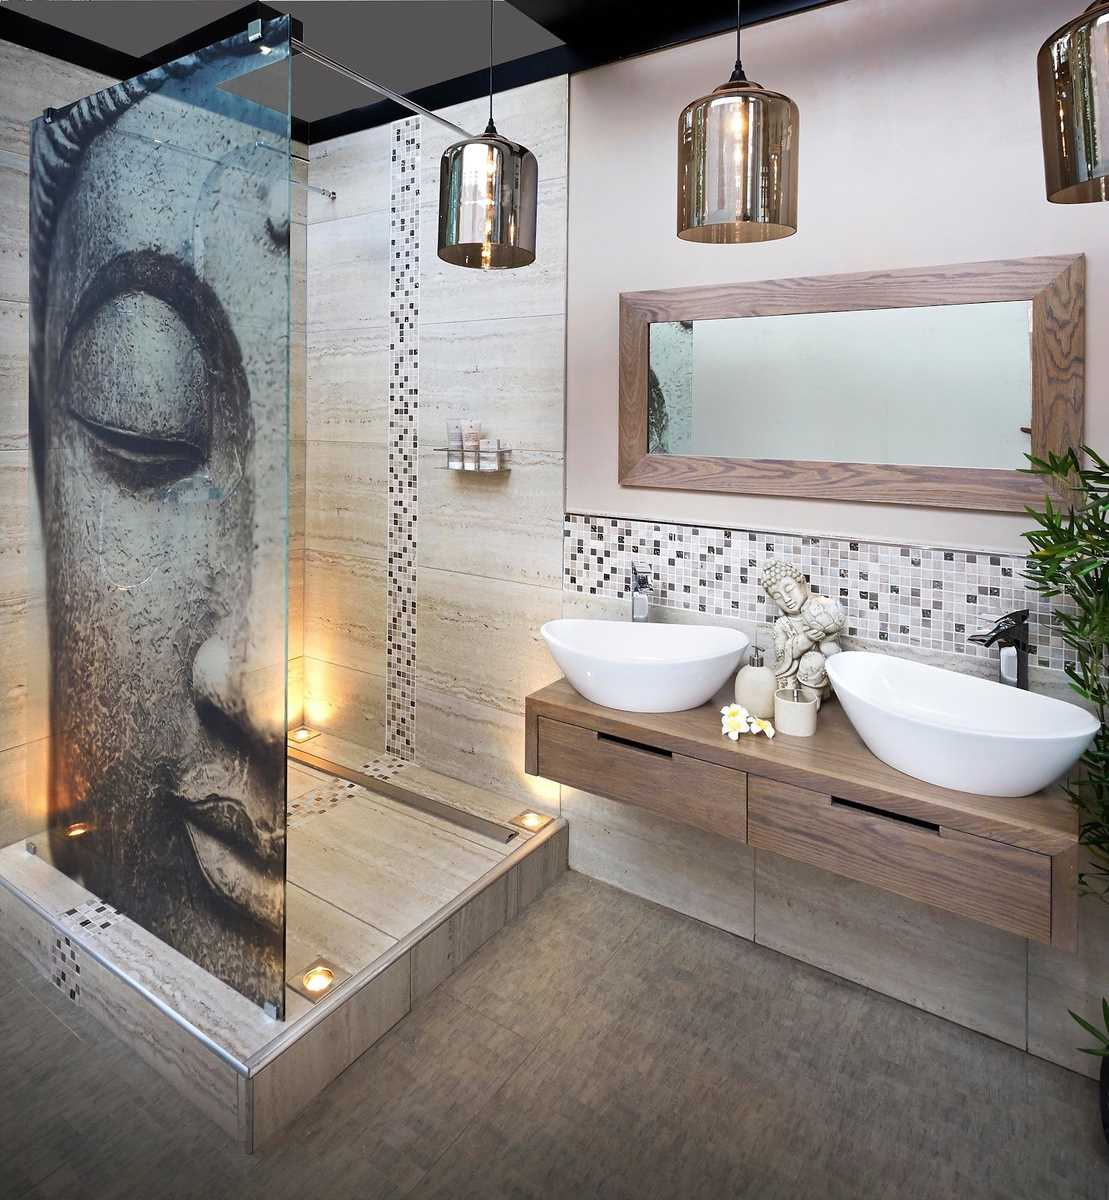 Как создать спа-атмосферу в ванной комнате: советы по дизайну ванны